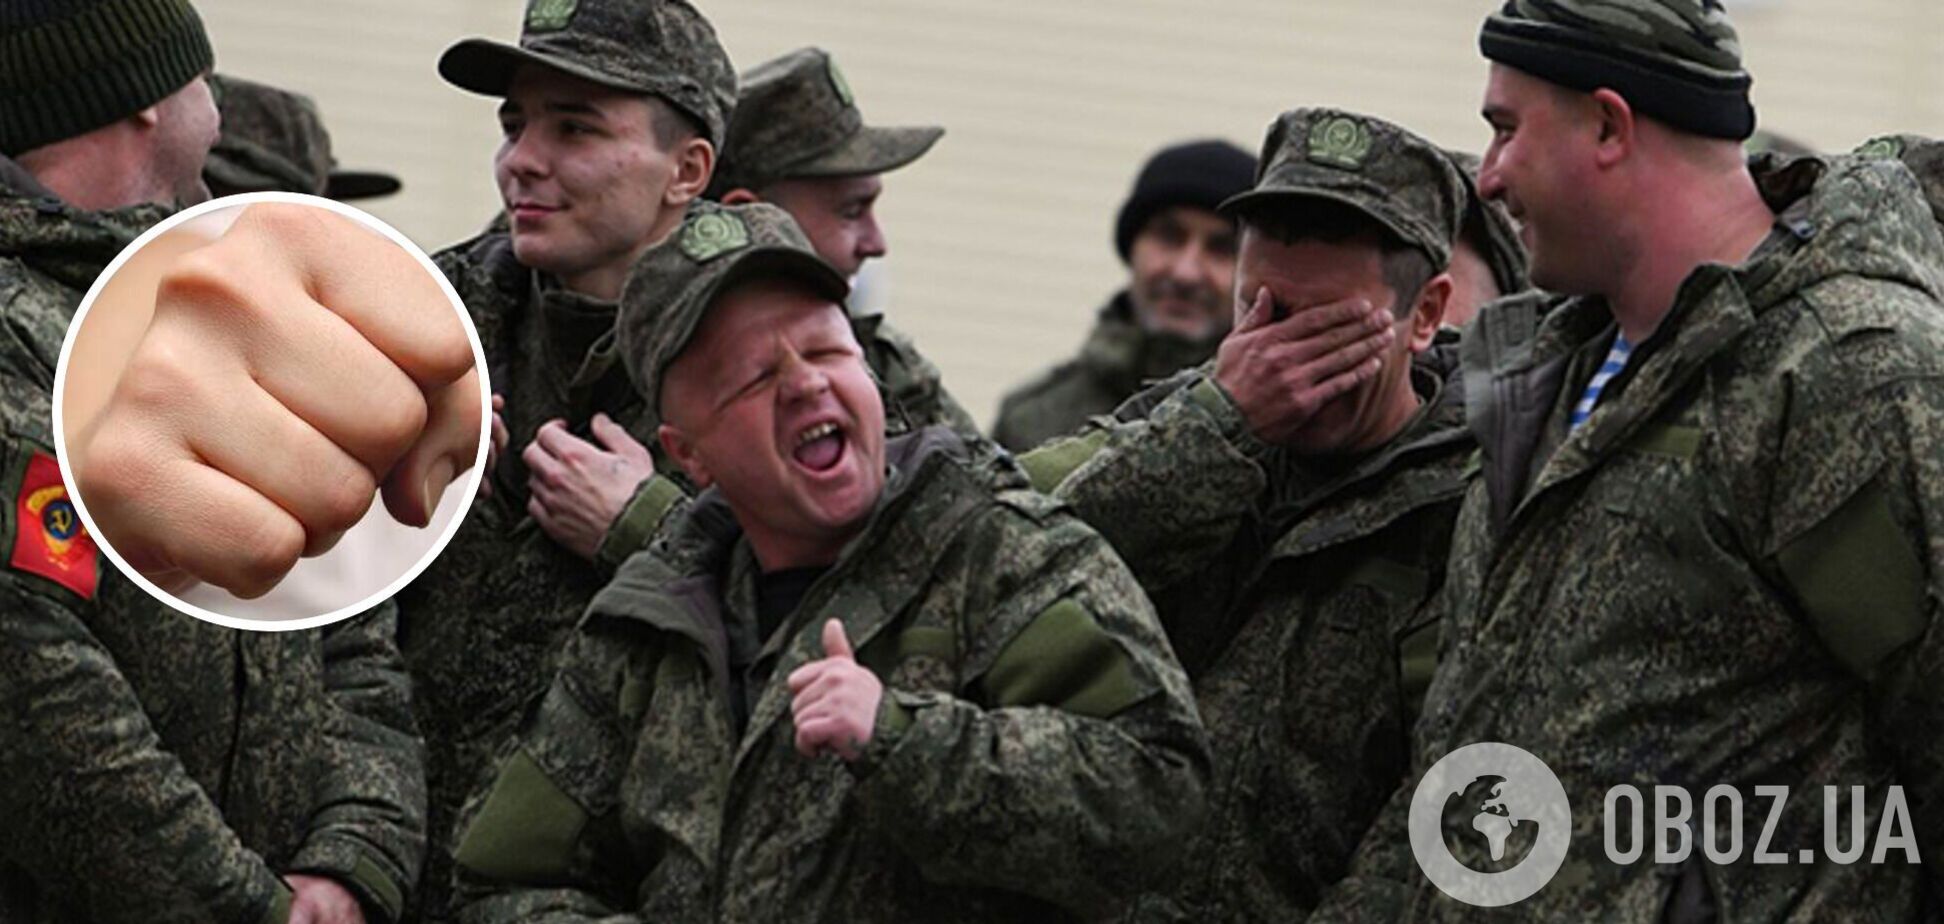 Скоро некому будет командовать: в армии РФ подчиненные все чаще убивают командиров, чтобы не идти на смерть